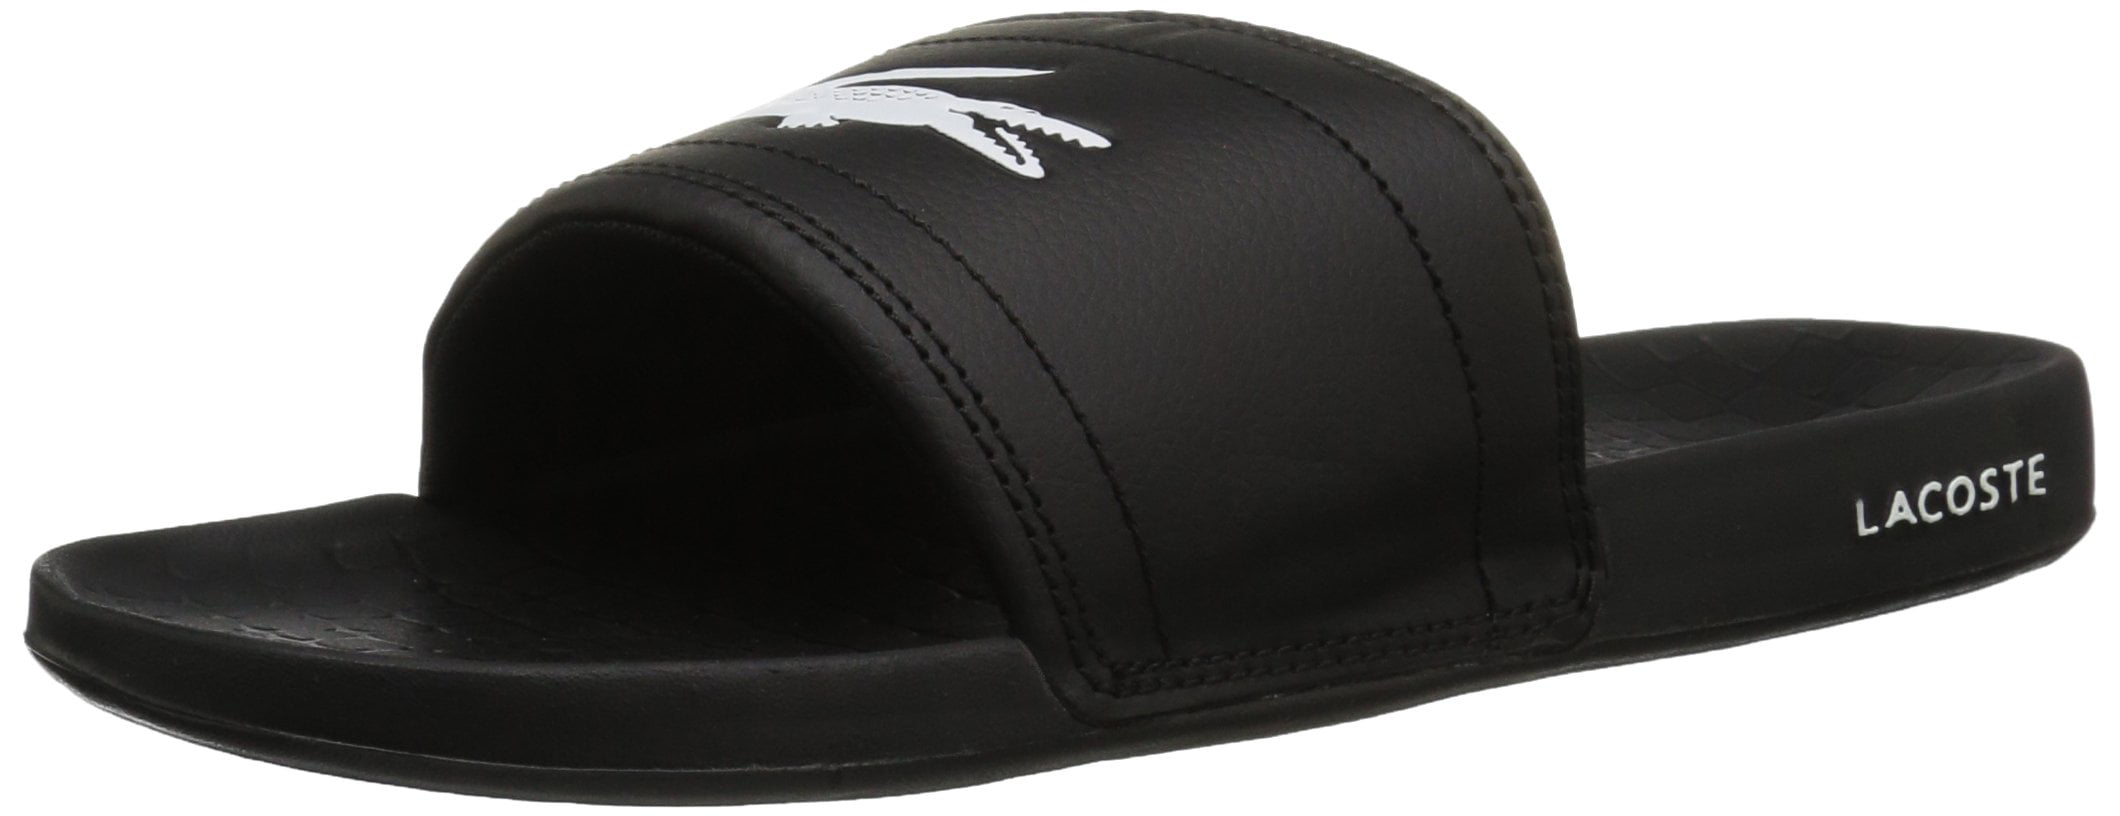 Lacoste Men's Fraisier 118 Slide Sandals 7-35CAM0145312 Black/White 